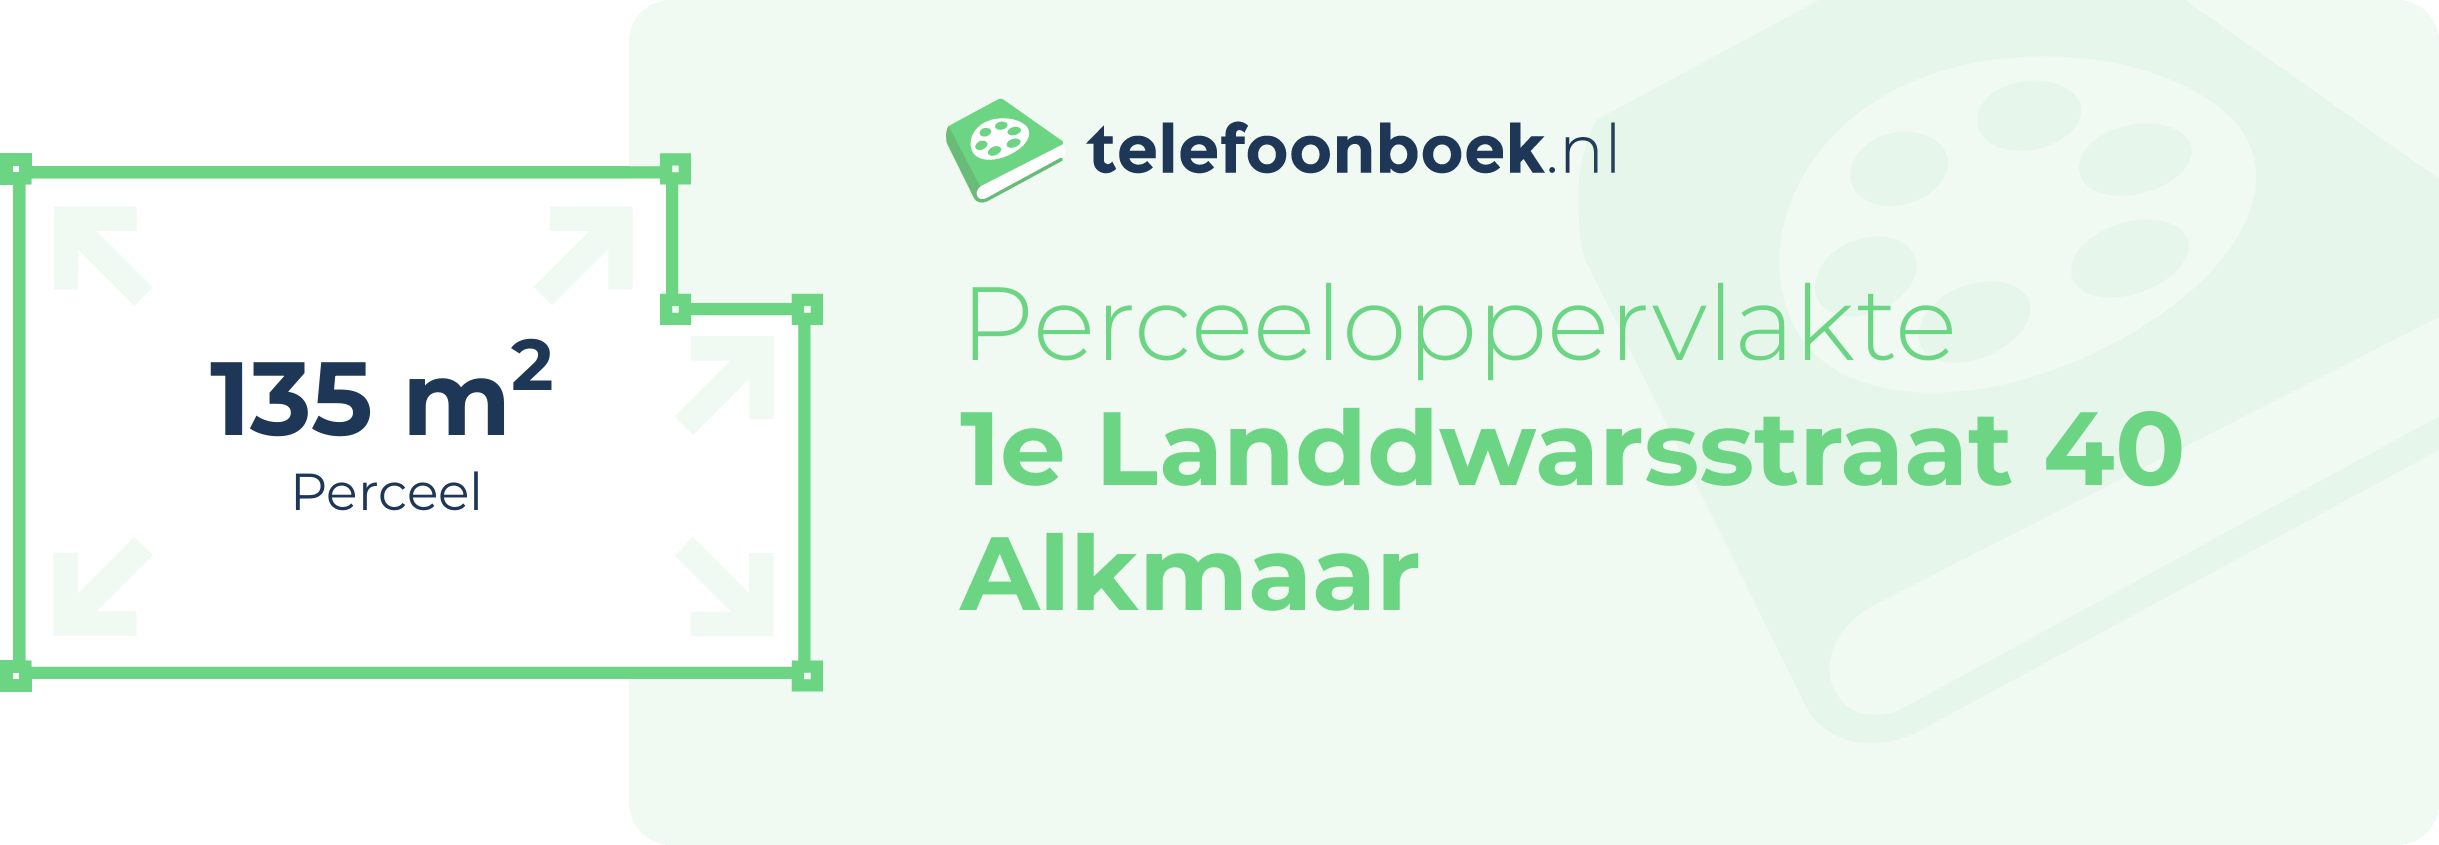 Perceeloppervlakte 1e Landdwarsstraat 40 Alkmaar